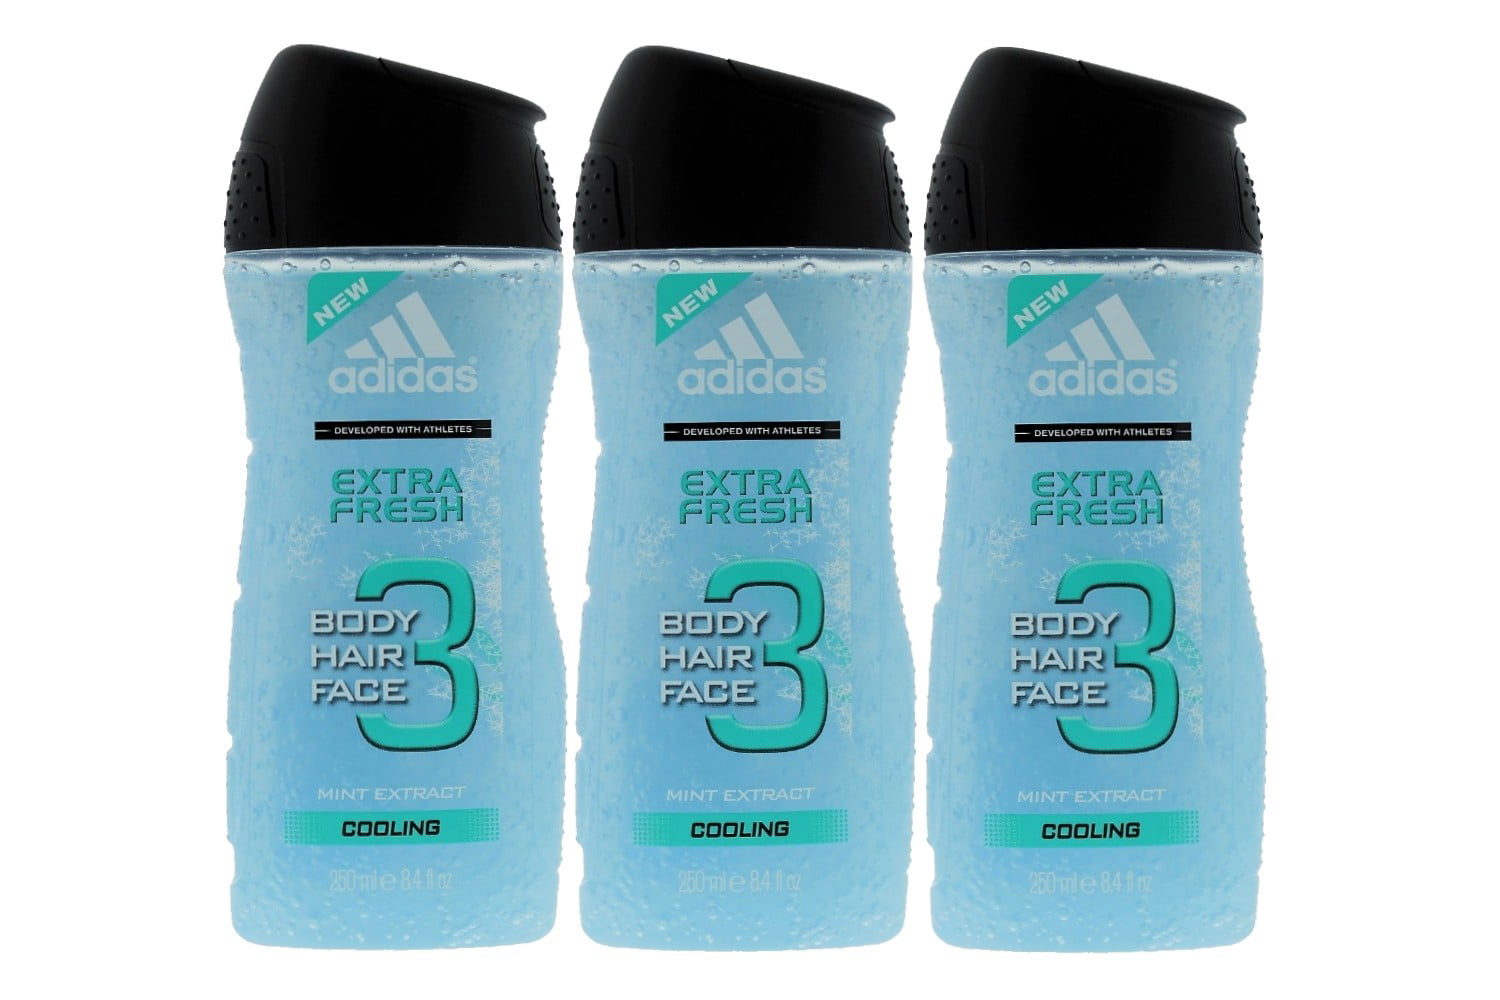 Adidas Fresh 3-in-1 Body, Hair Face Shower Gel - Walmart.com